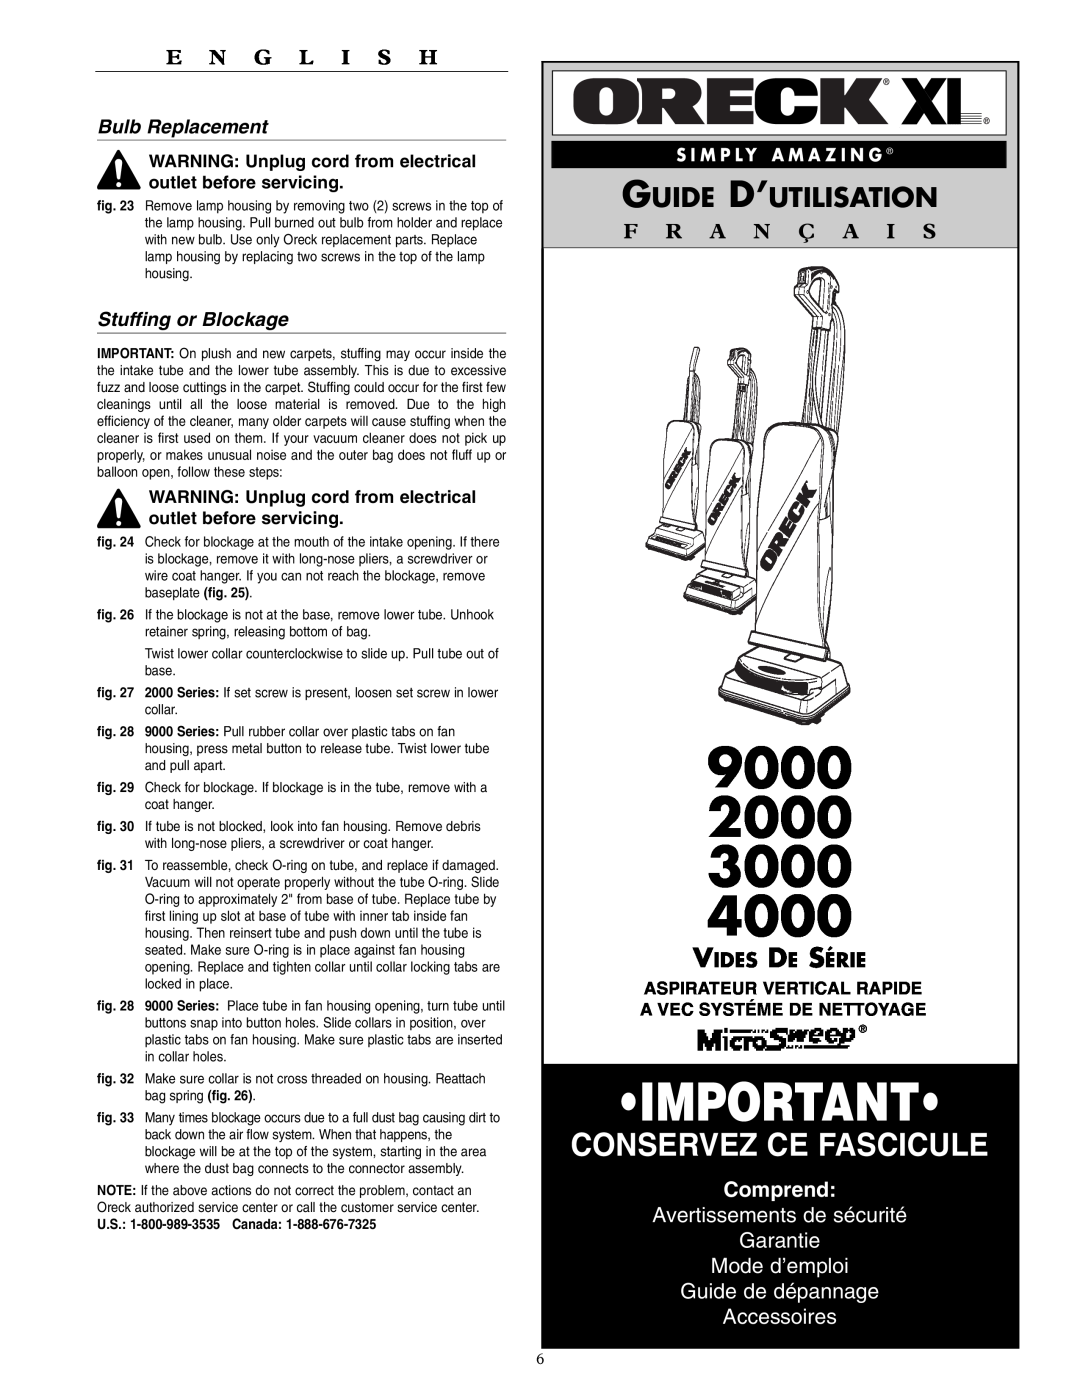 Oreck 2000, 4000 Guide D’Utilisation, Comprend, Avertissements de sécurité Garantie Mode d’emploi, Bulb Replacement, 9000 